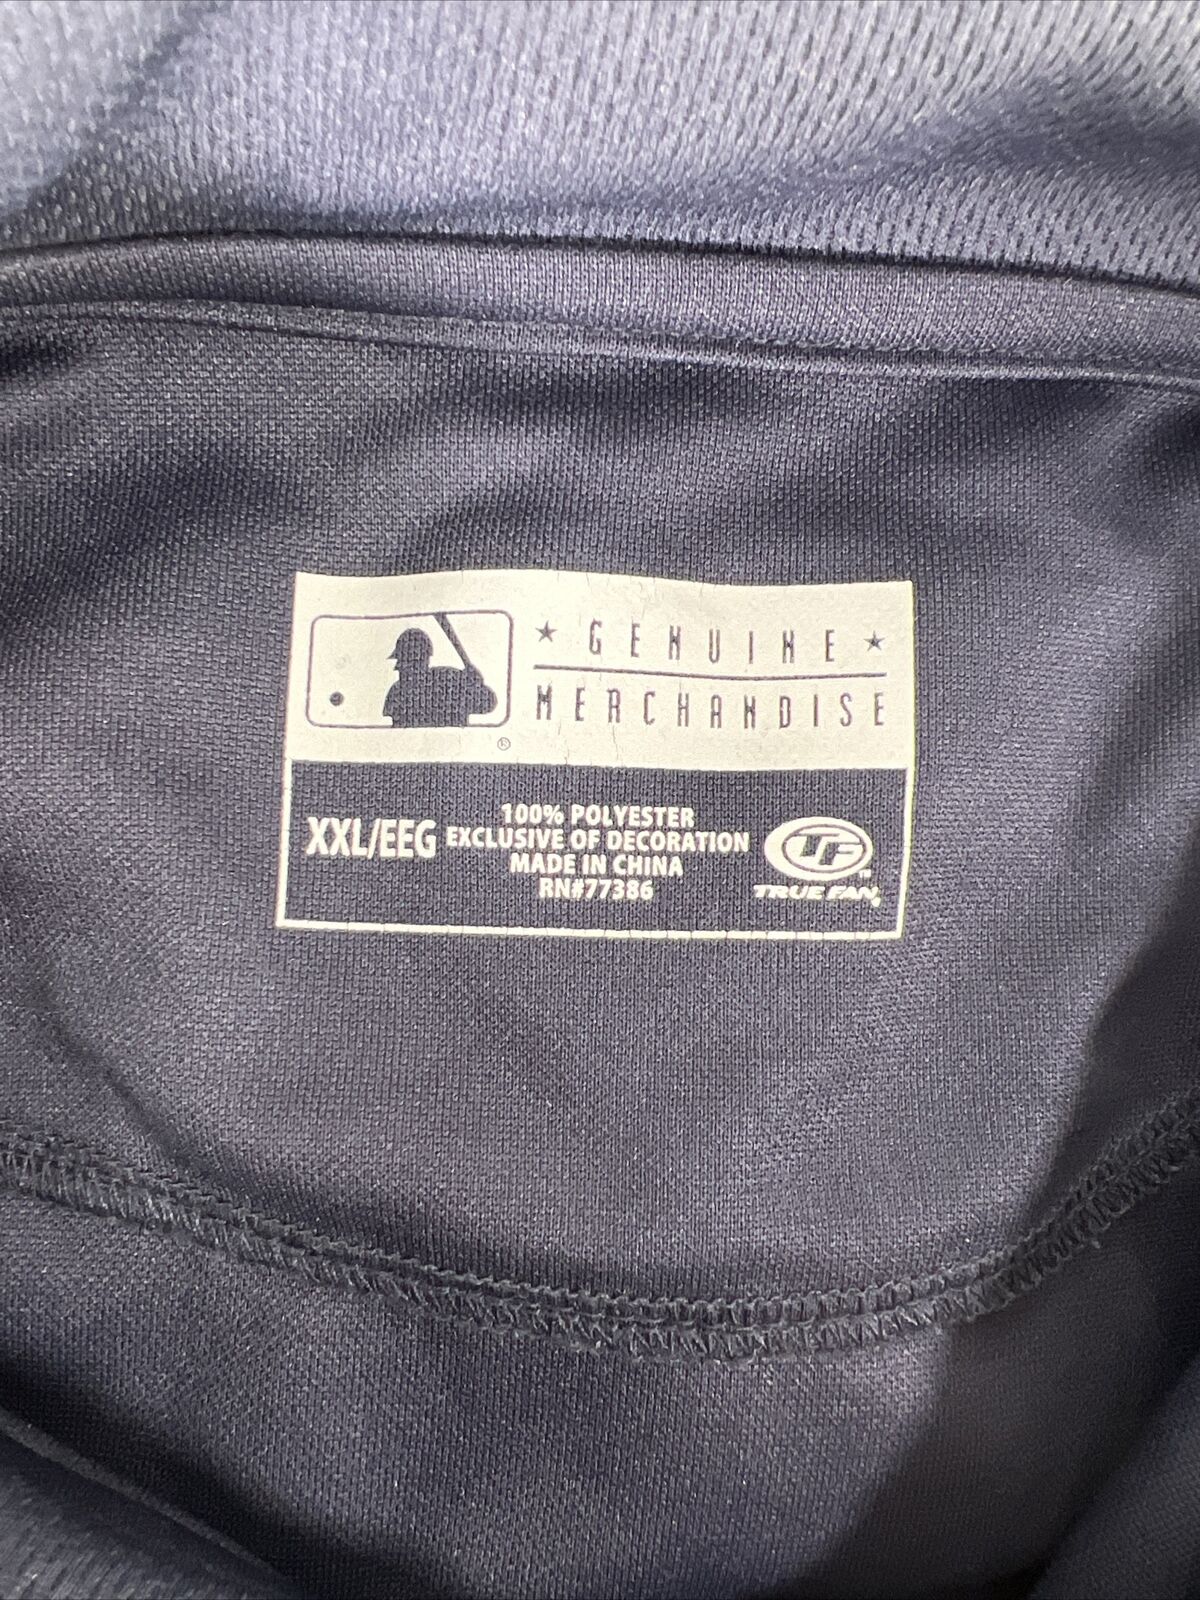 Genuine Merchandise Men's Blue Detroit Tigers MBL Polo Shirt - XXL